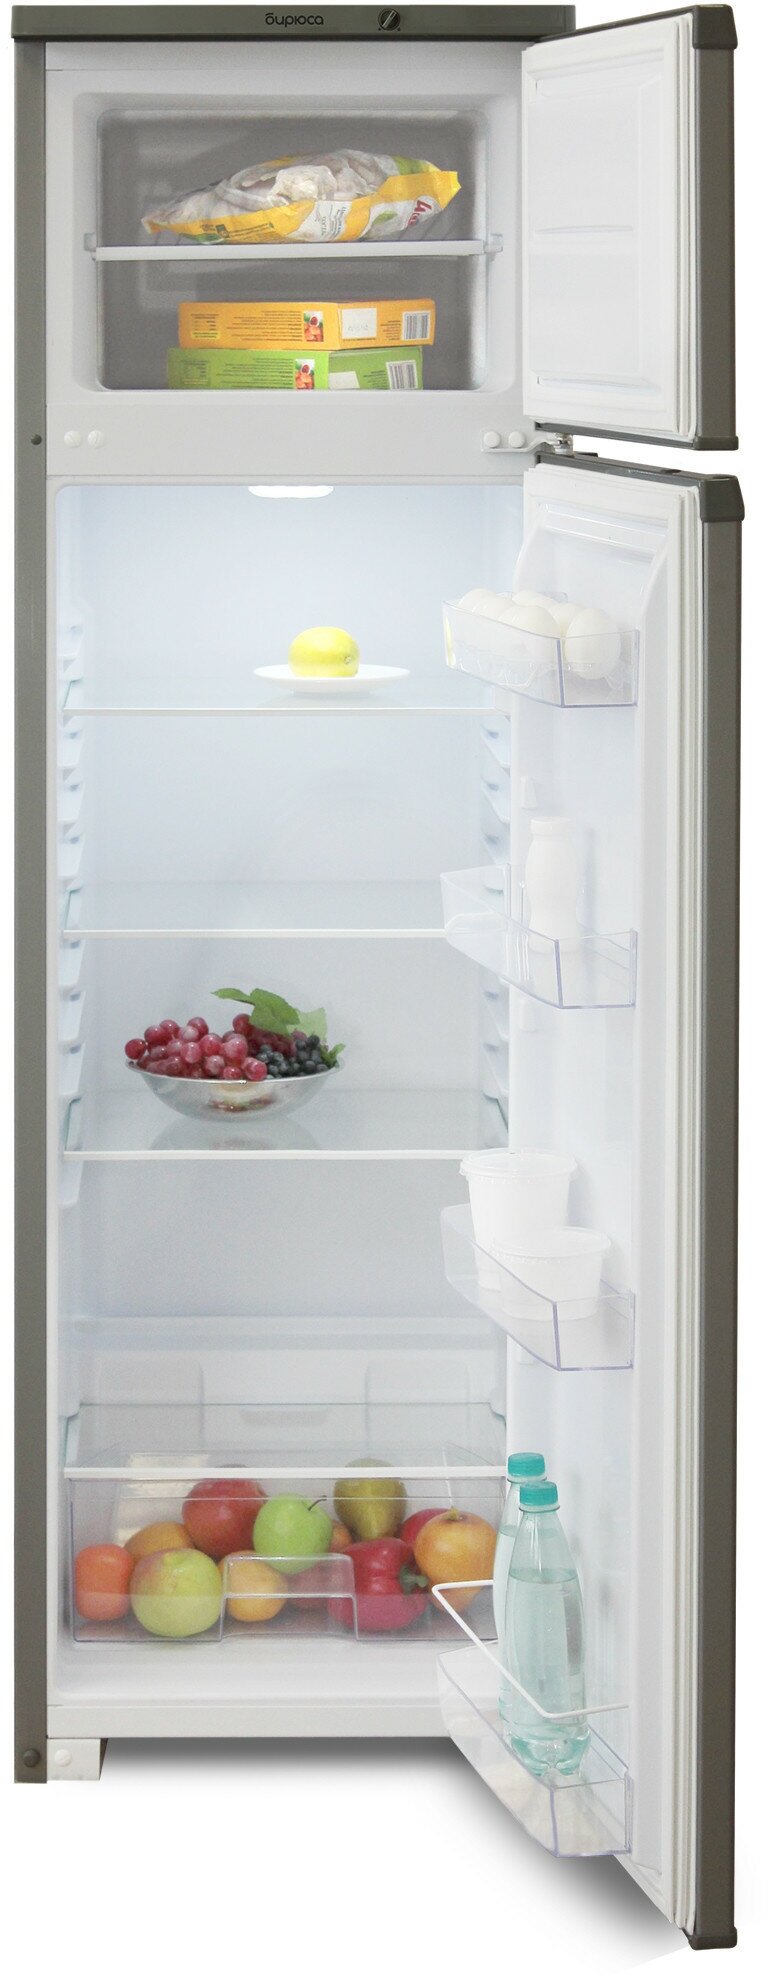 Холодильник Бирюса - фото №9